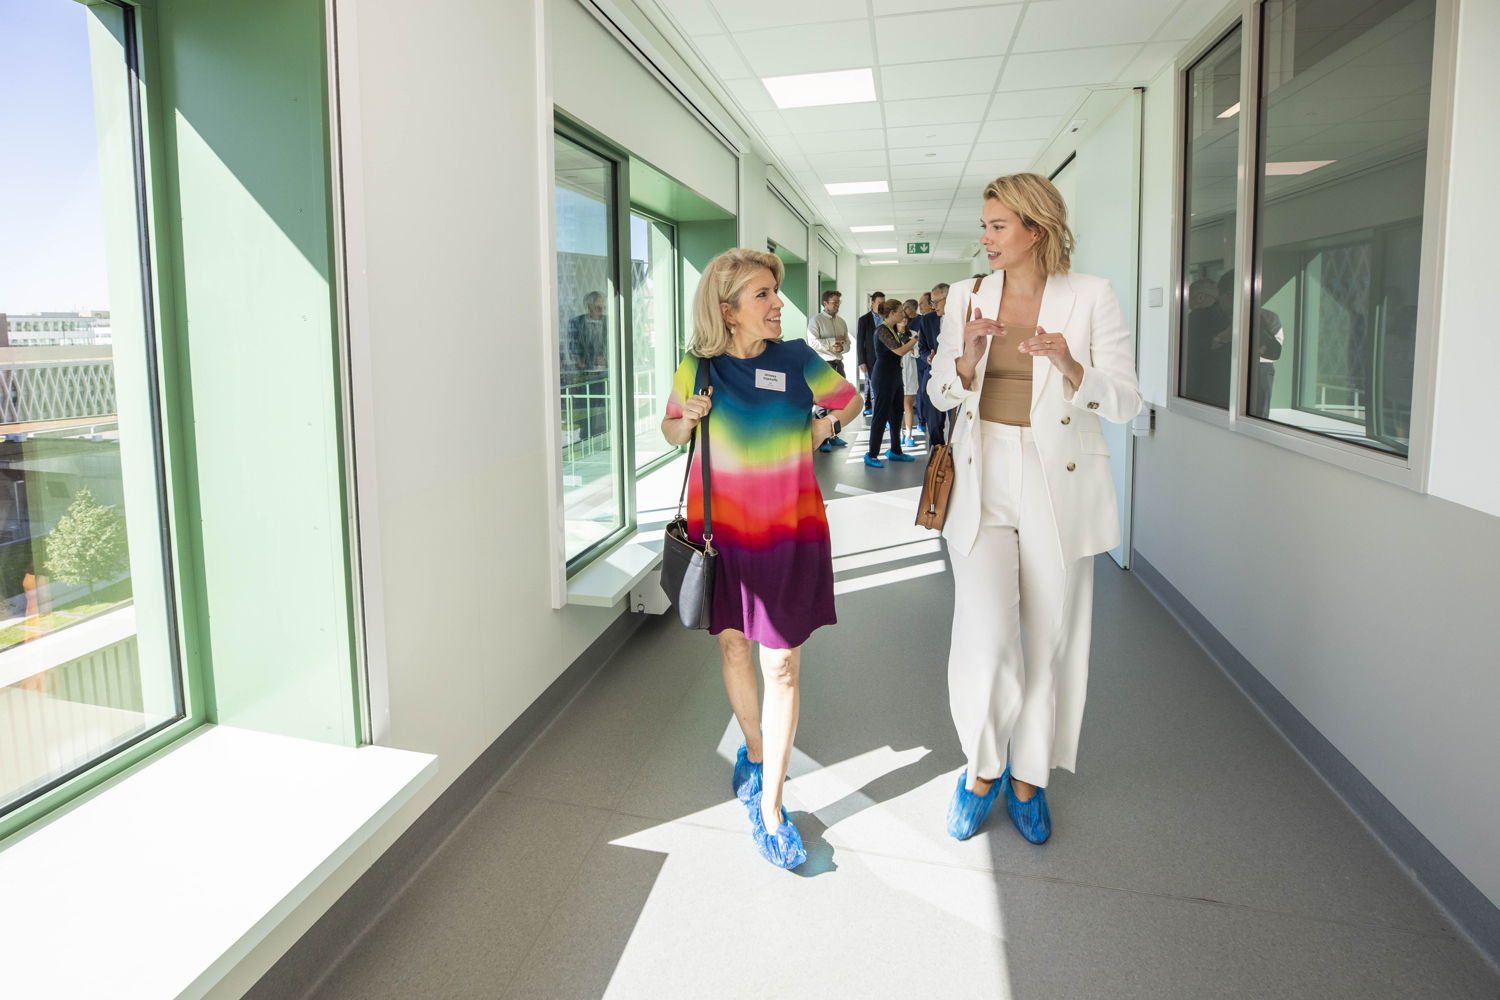 (Vlnr) Willeke Dijkhoffz en Els van Doesburg brengen bezoeken het nieuwe ziekenhuis ZNA Cadix Ze dragen blauwe overschoenen omdat de vloer niet vuil te maken (foto: ZNA / Dirk Kestens)